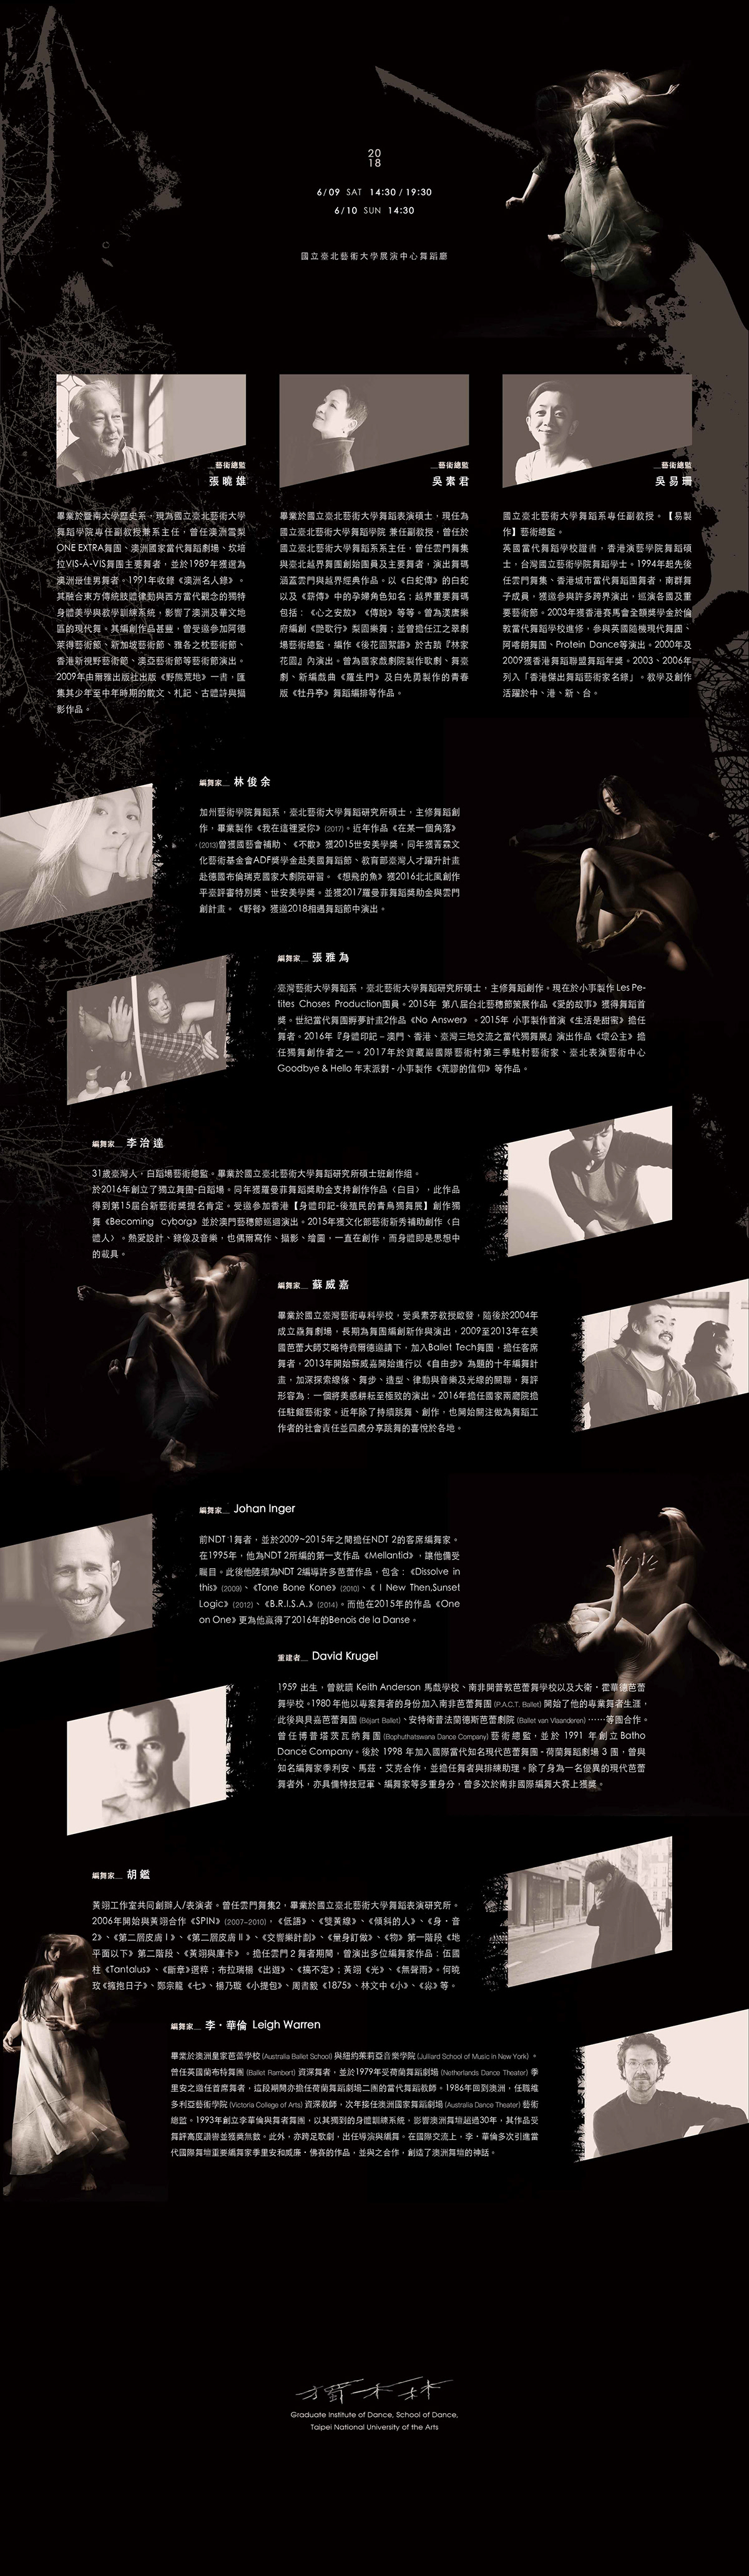 表演藝術 舞蹈演出 平面設計 視覺設計 文宣設計 林誼璇 畢業製作   graphic design  北藝大 Yi-Syuan Lin